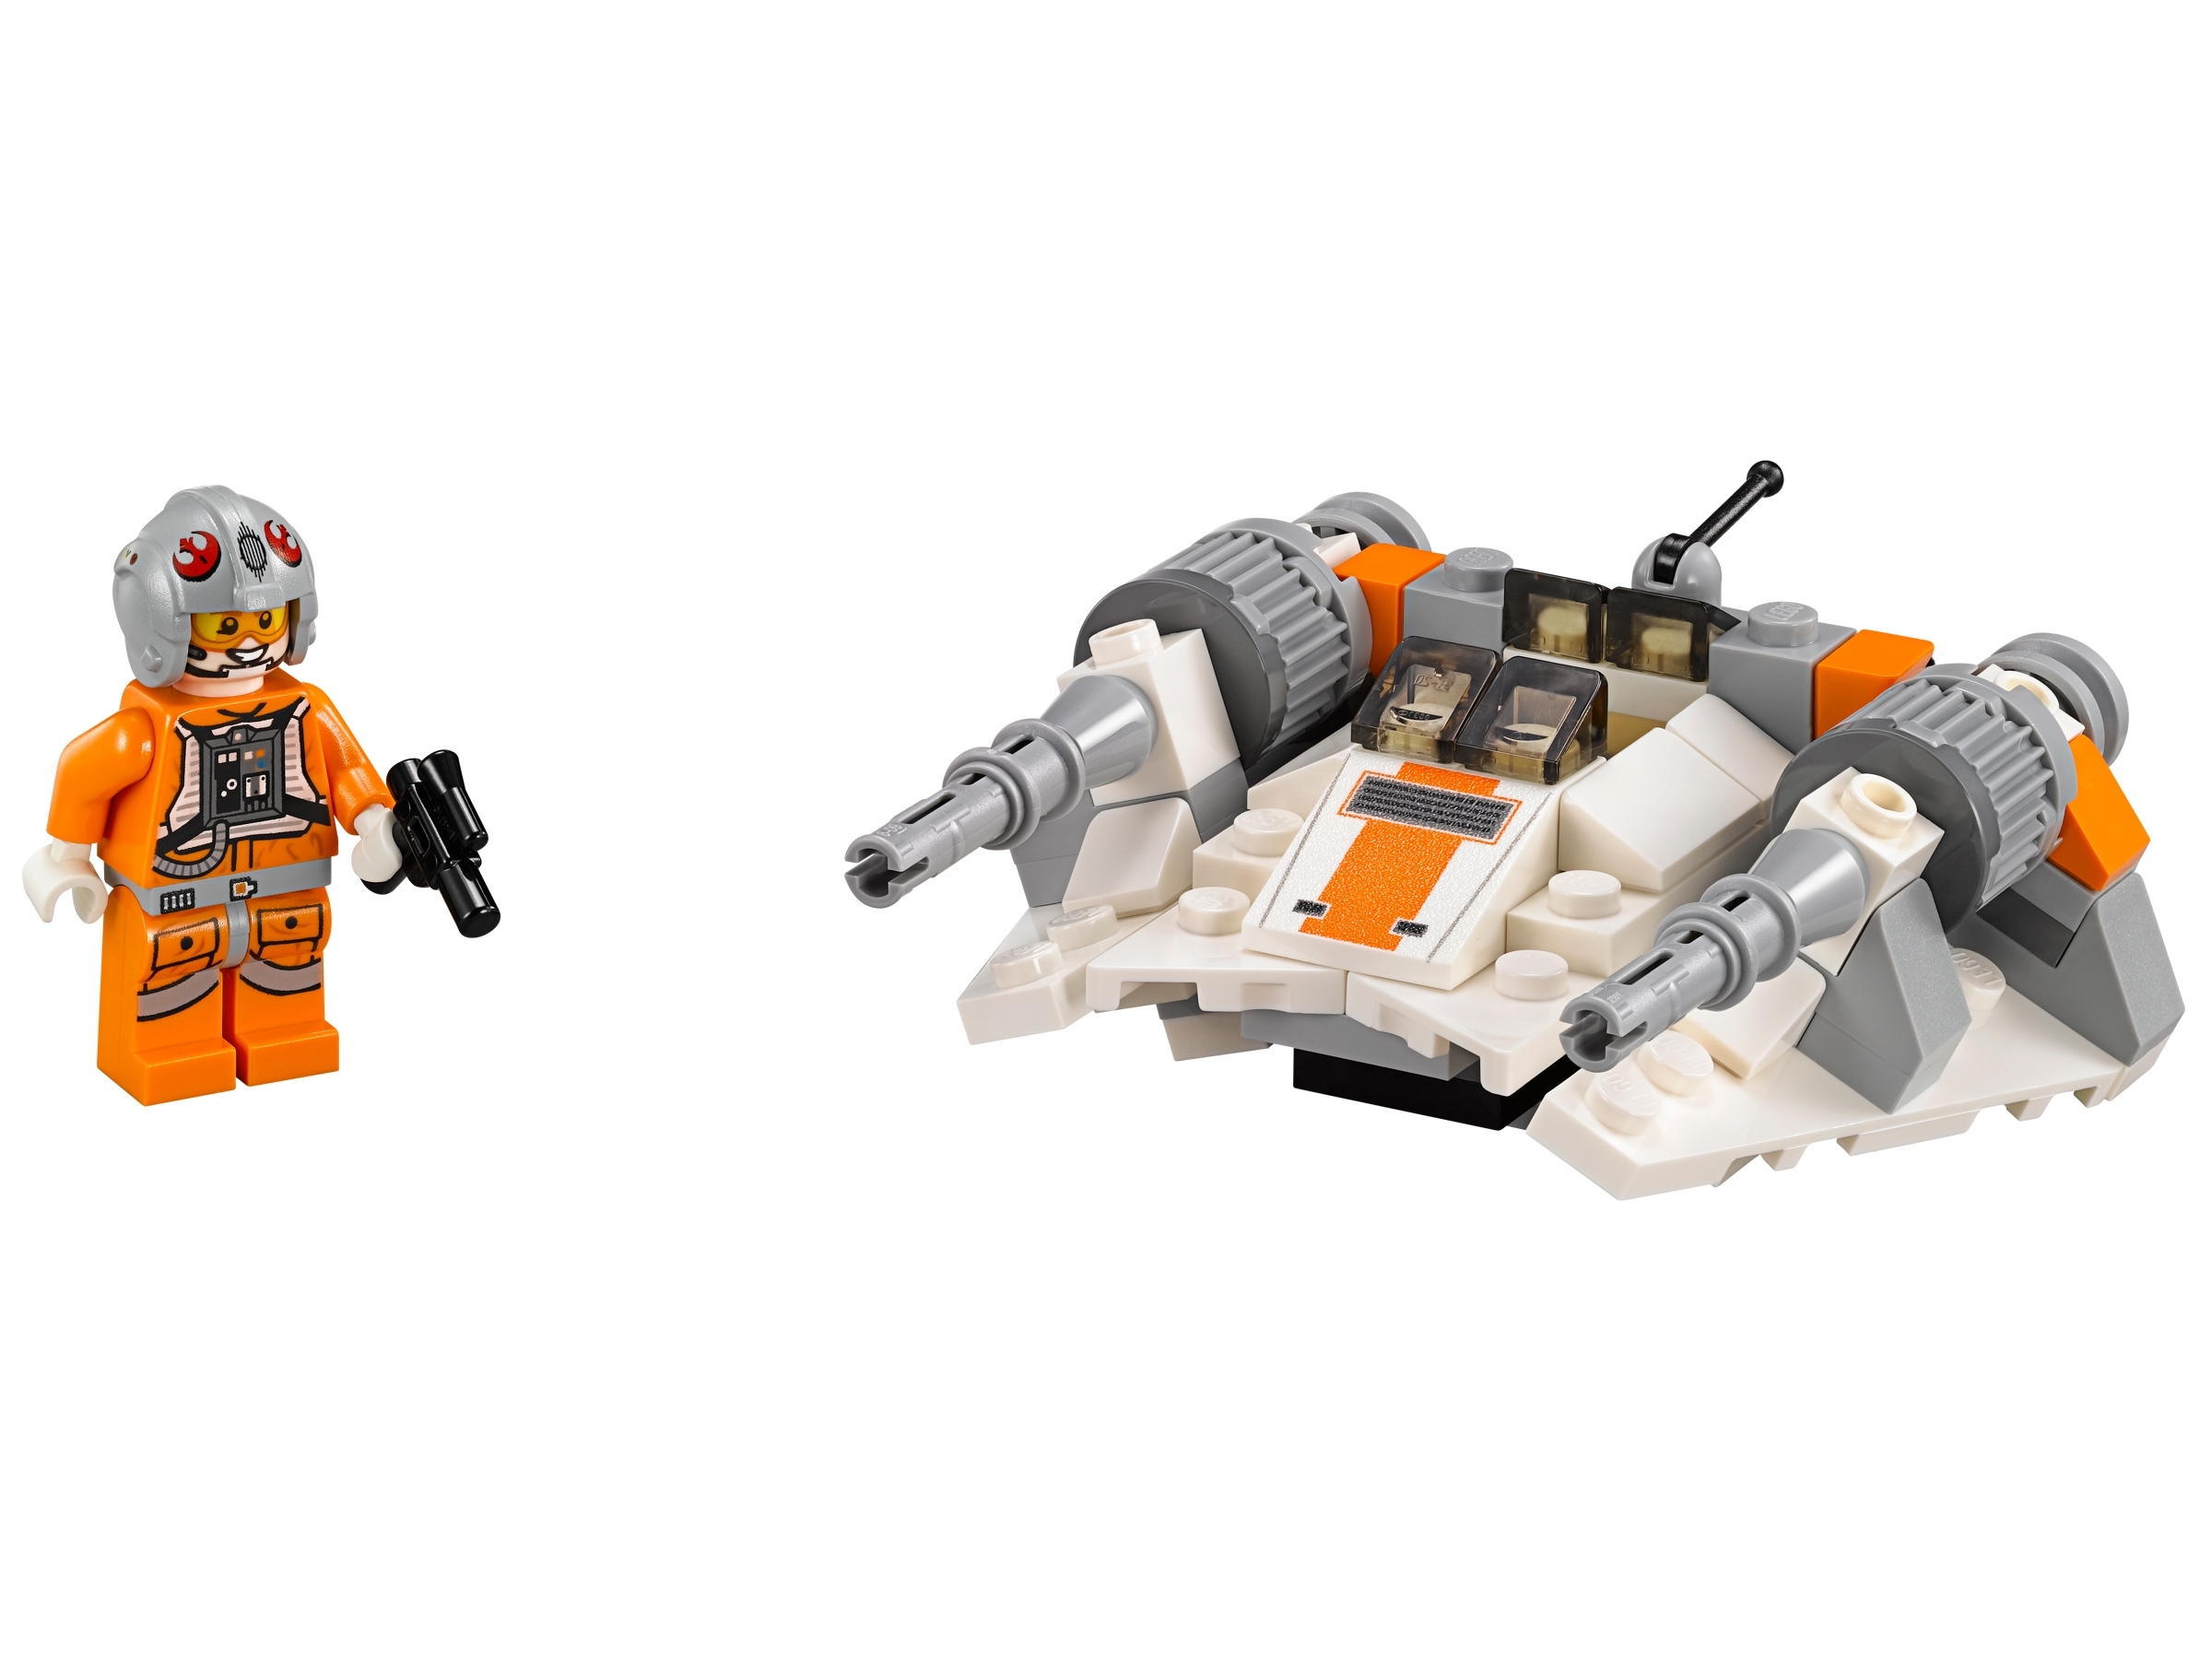 Lego 75074 Snowspeeder Star Wars Microfighters New Set